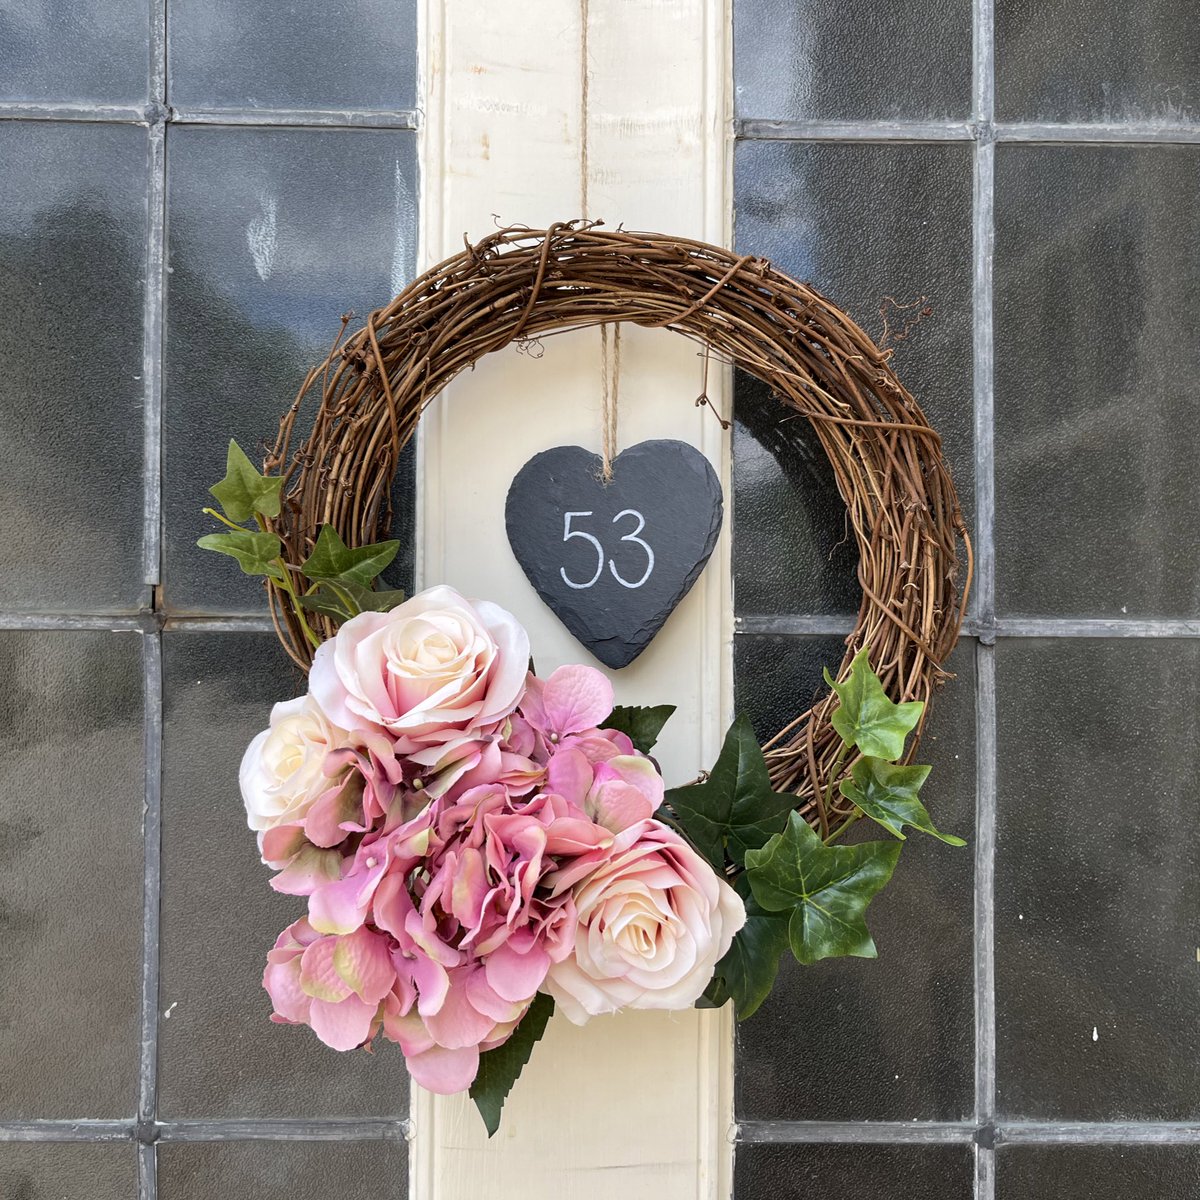 Personalised door wreaths are now available in my Etsy shop 🌸
#doorwreath #fauxflowers #personaliseddoorwreath #luxurydoorwreath #personalised #handmadegift #botanicals #weddingdecor #handmade #handmadegifts #etsyshopuk #etsy #etsyuk #etsyshop #acornstationery #etsyshopowner